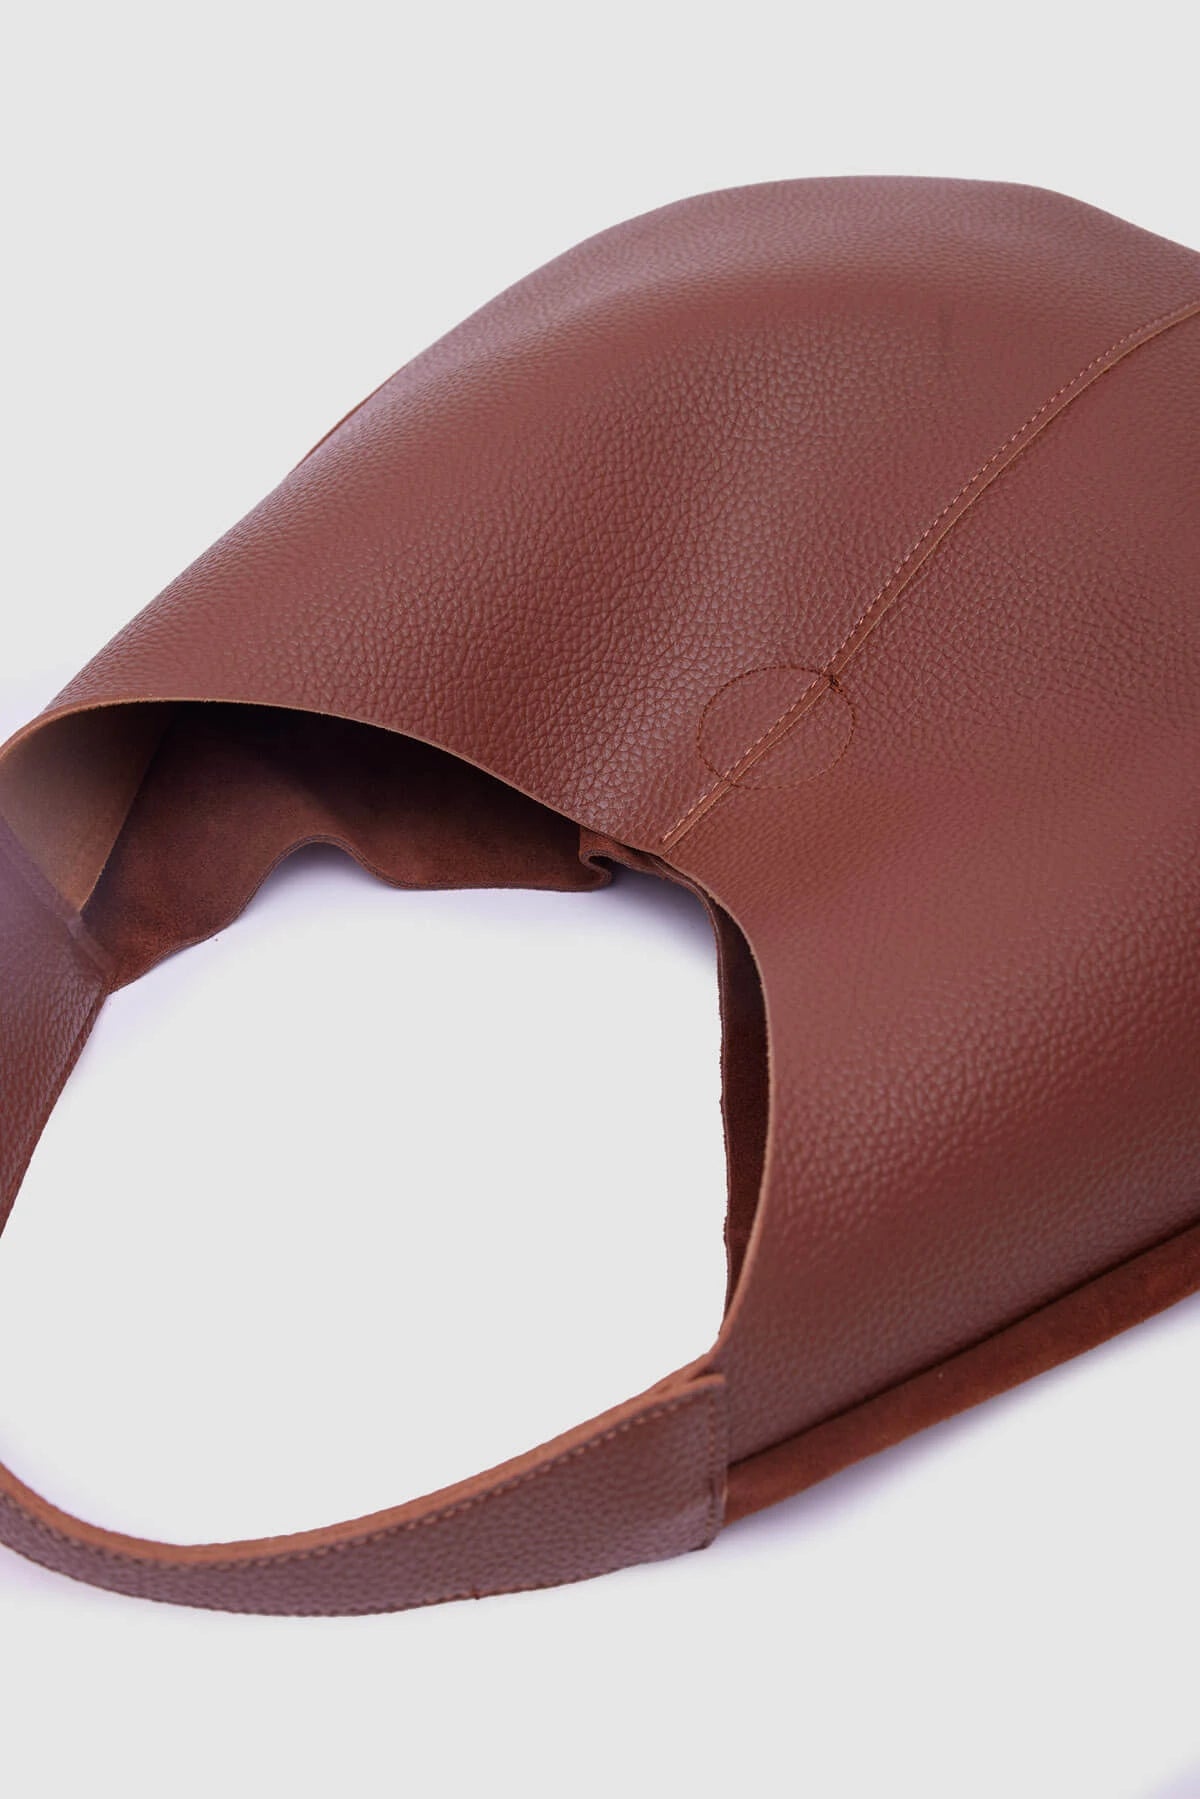 Fred Tan Leather Loose Oversize Shoulder Bag shoulder bag LUNARITY GARAGE   